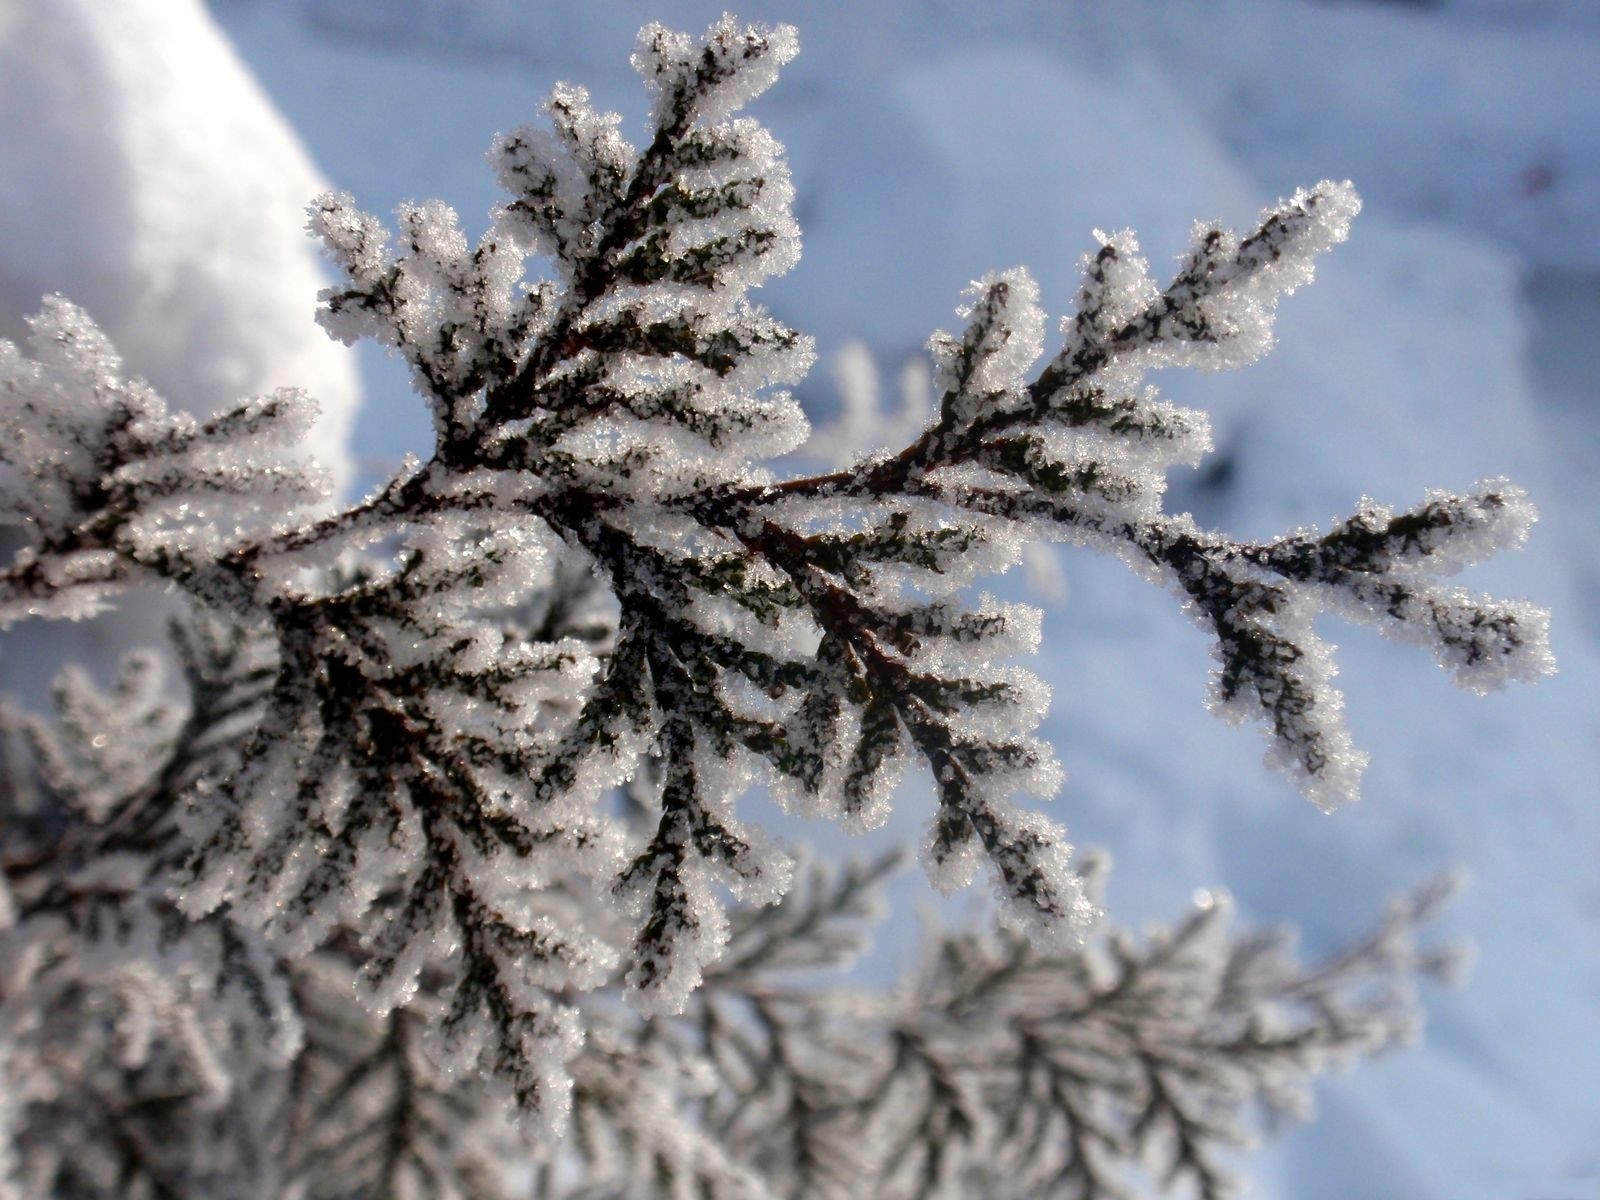 Скачать обои бесплатно Зима, Земля/природа картинка на рабочий стол ПК